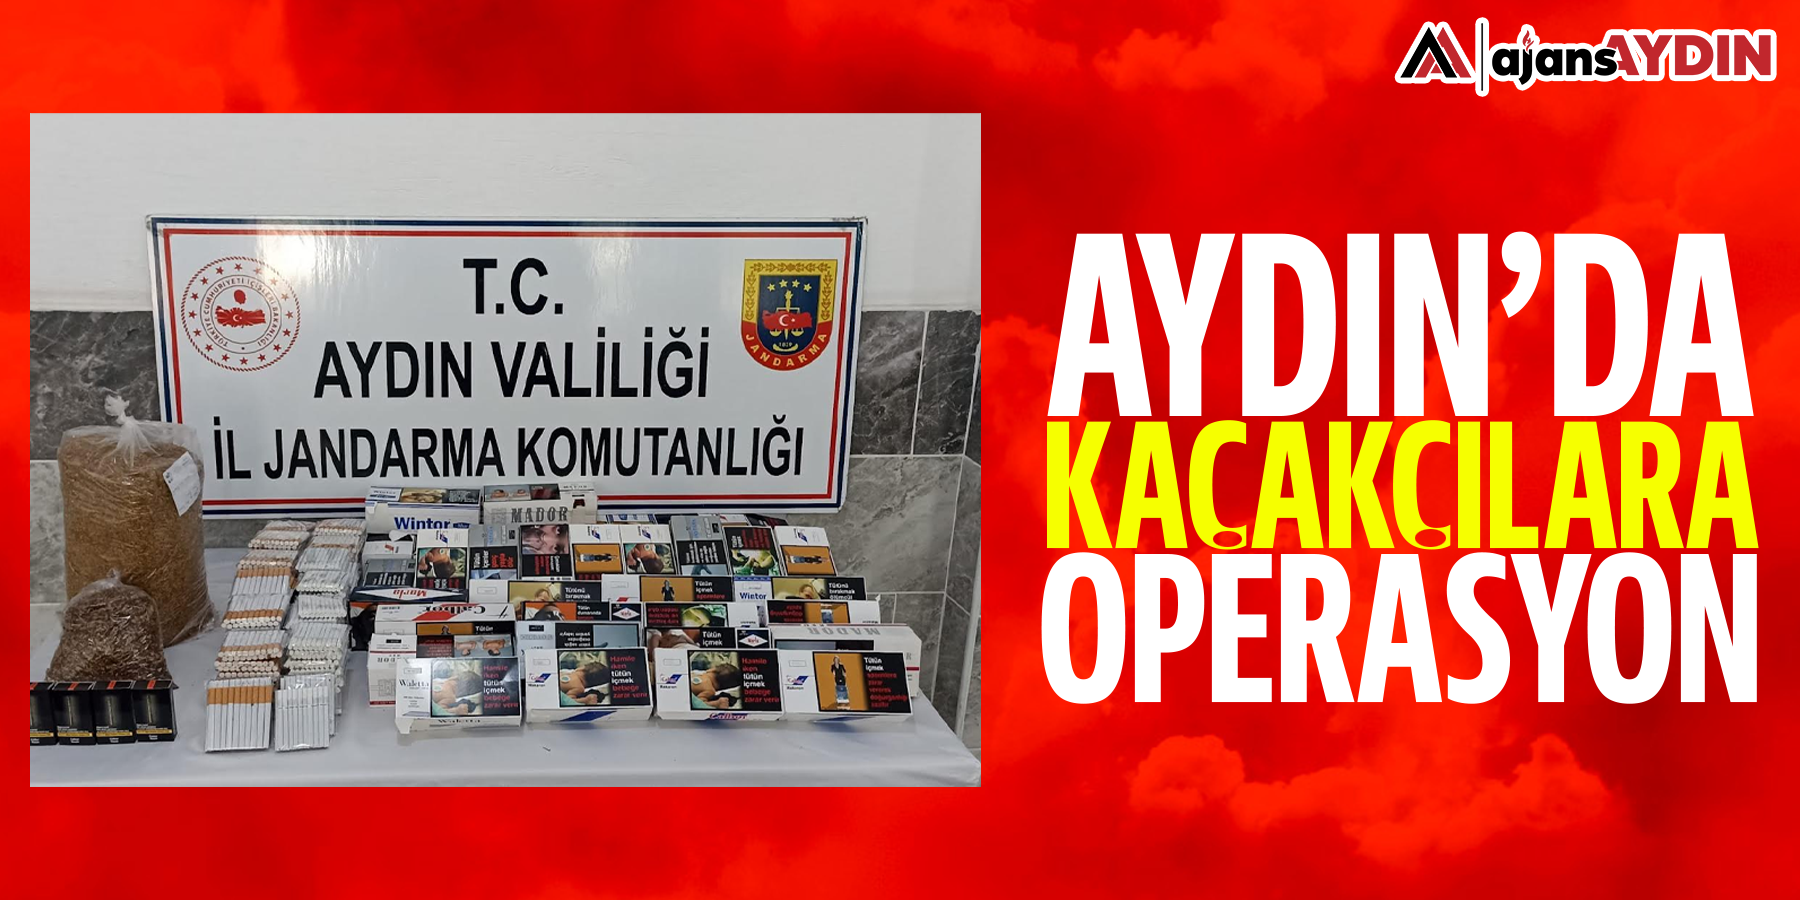 Aydın'da kaçakçılara operasyon